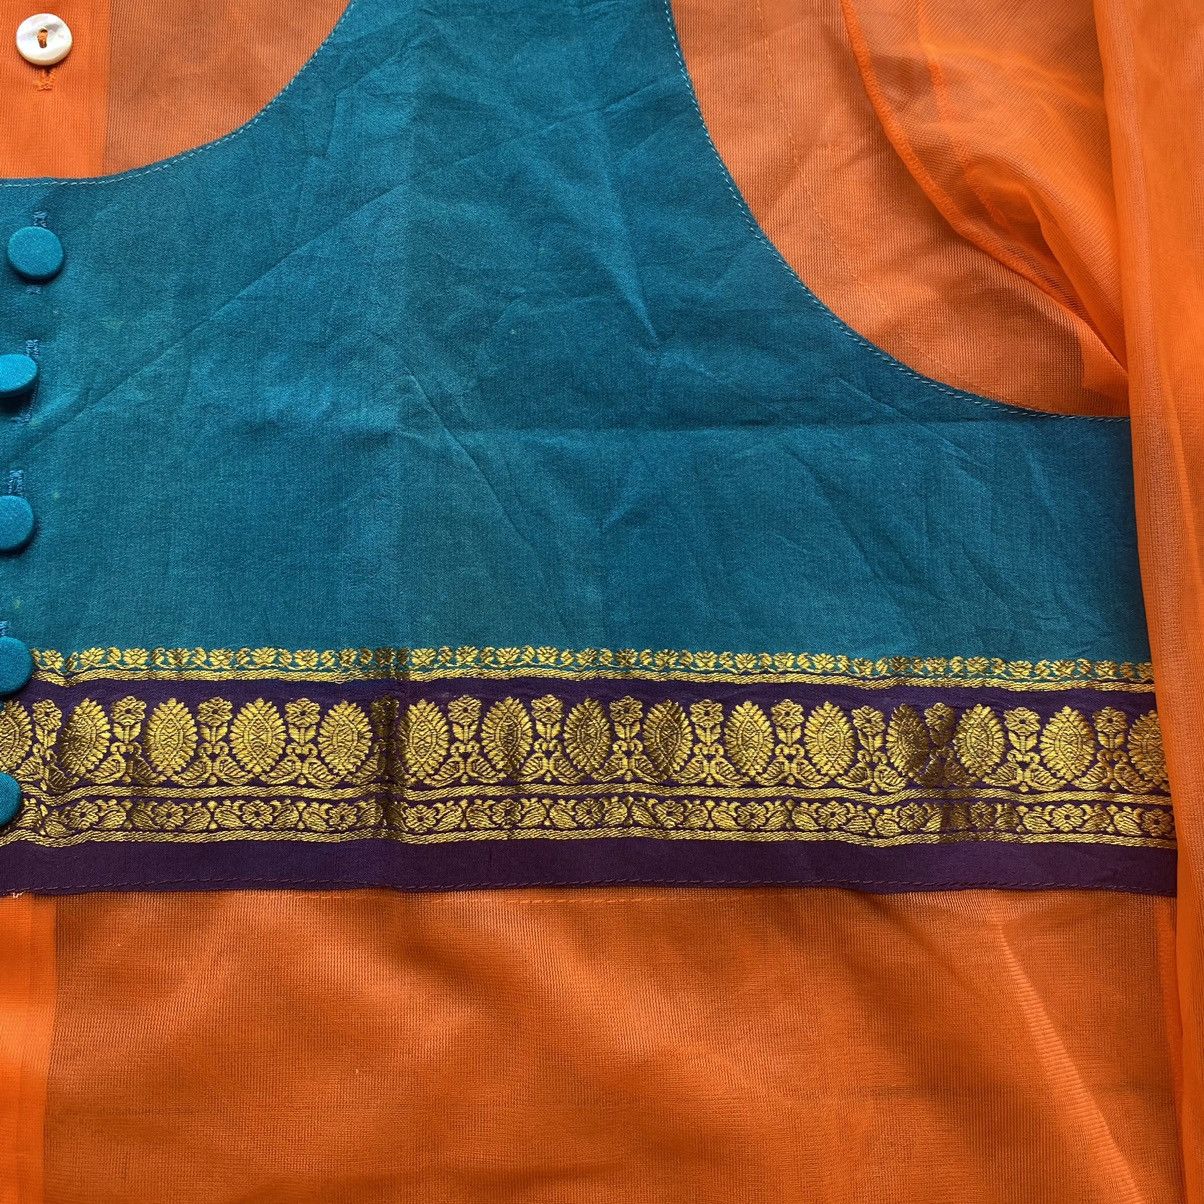 Jean Paul Gaultier Vintage JPG Orange Mesh Shirt With Native Details Size US S / EU 44-46 / 1 - 3 Thumbnail